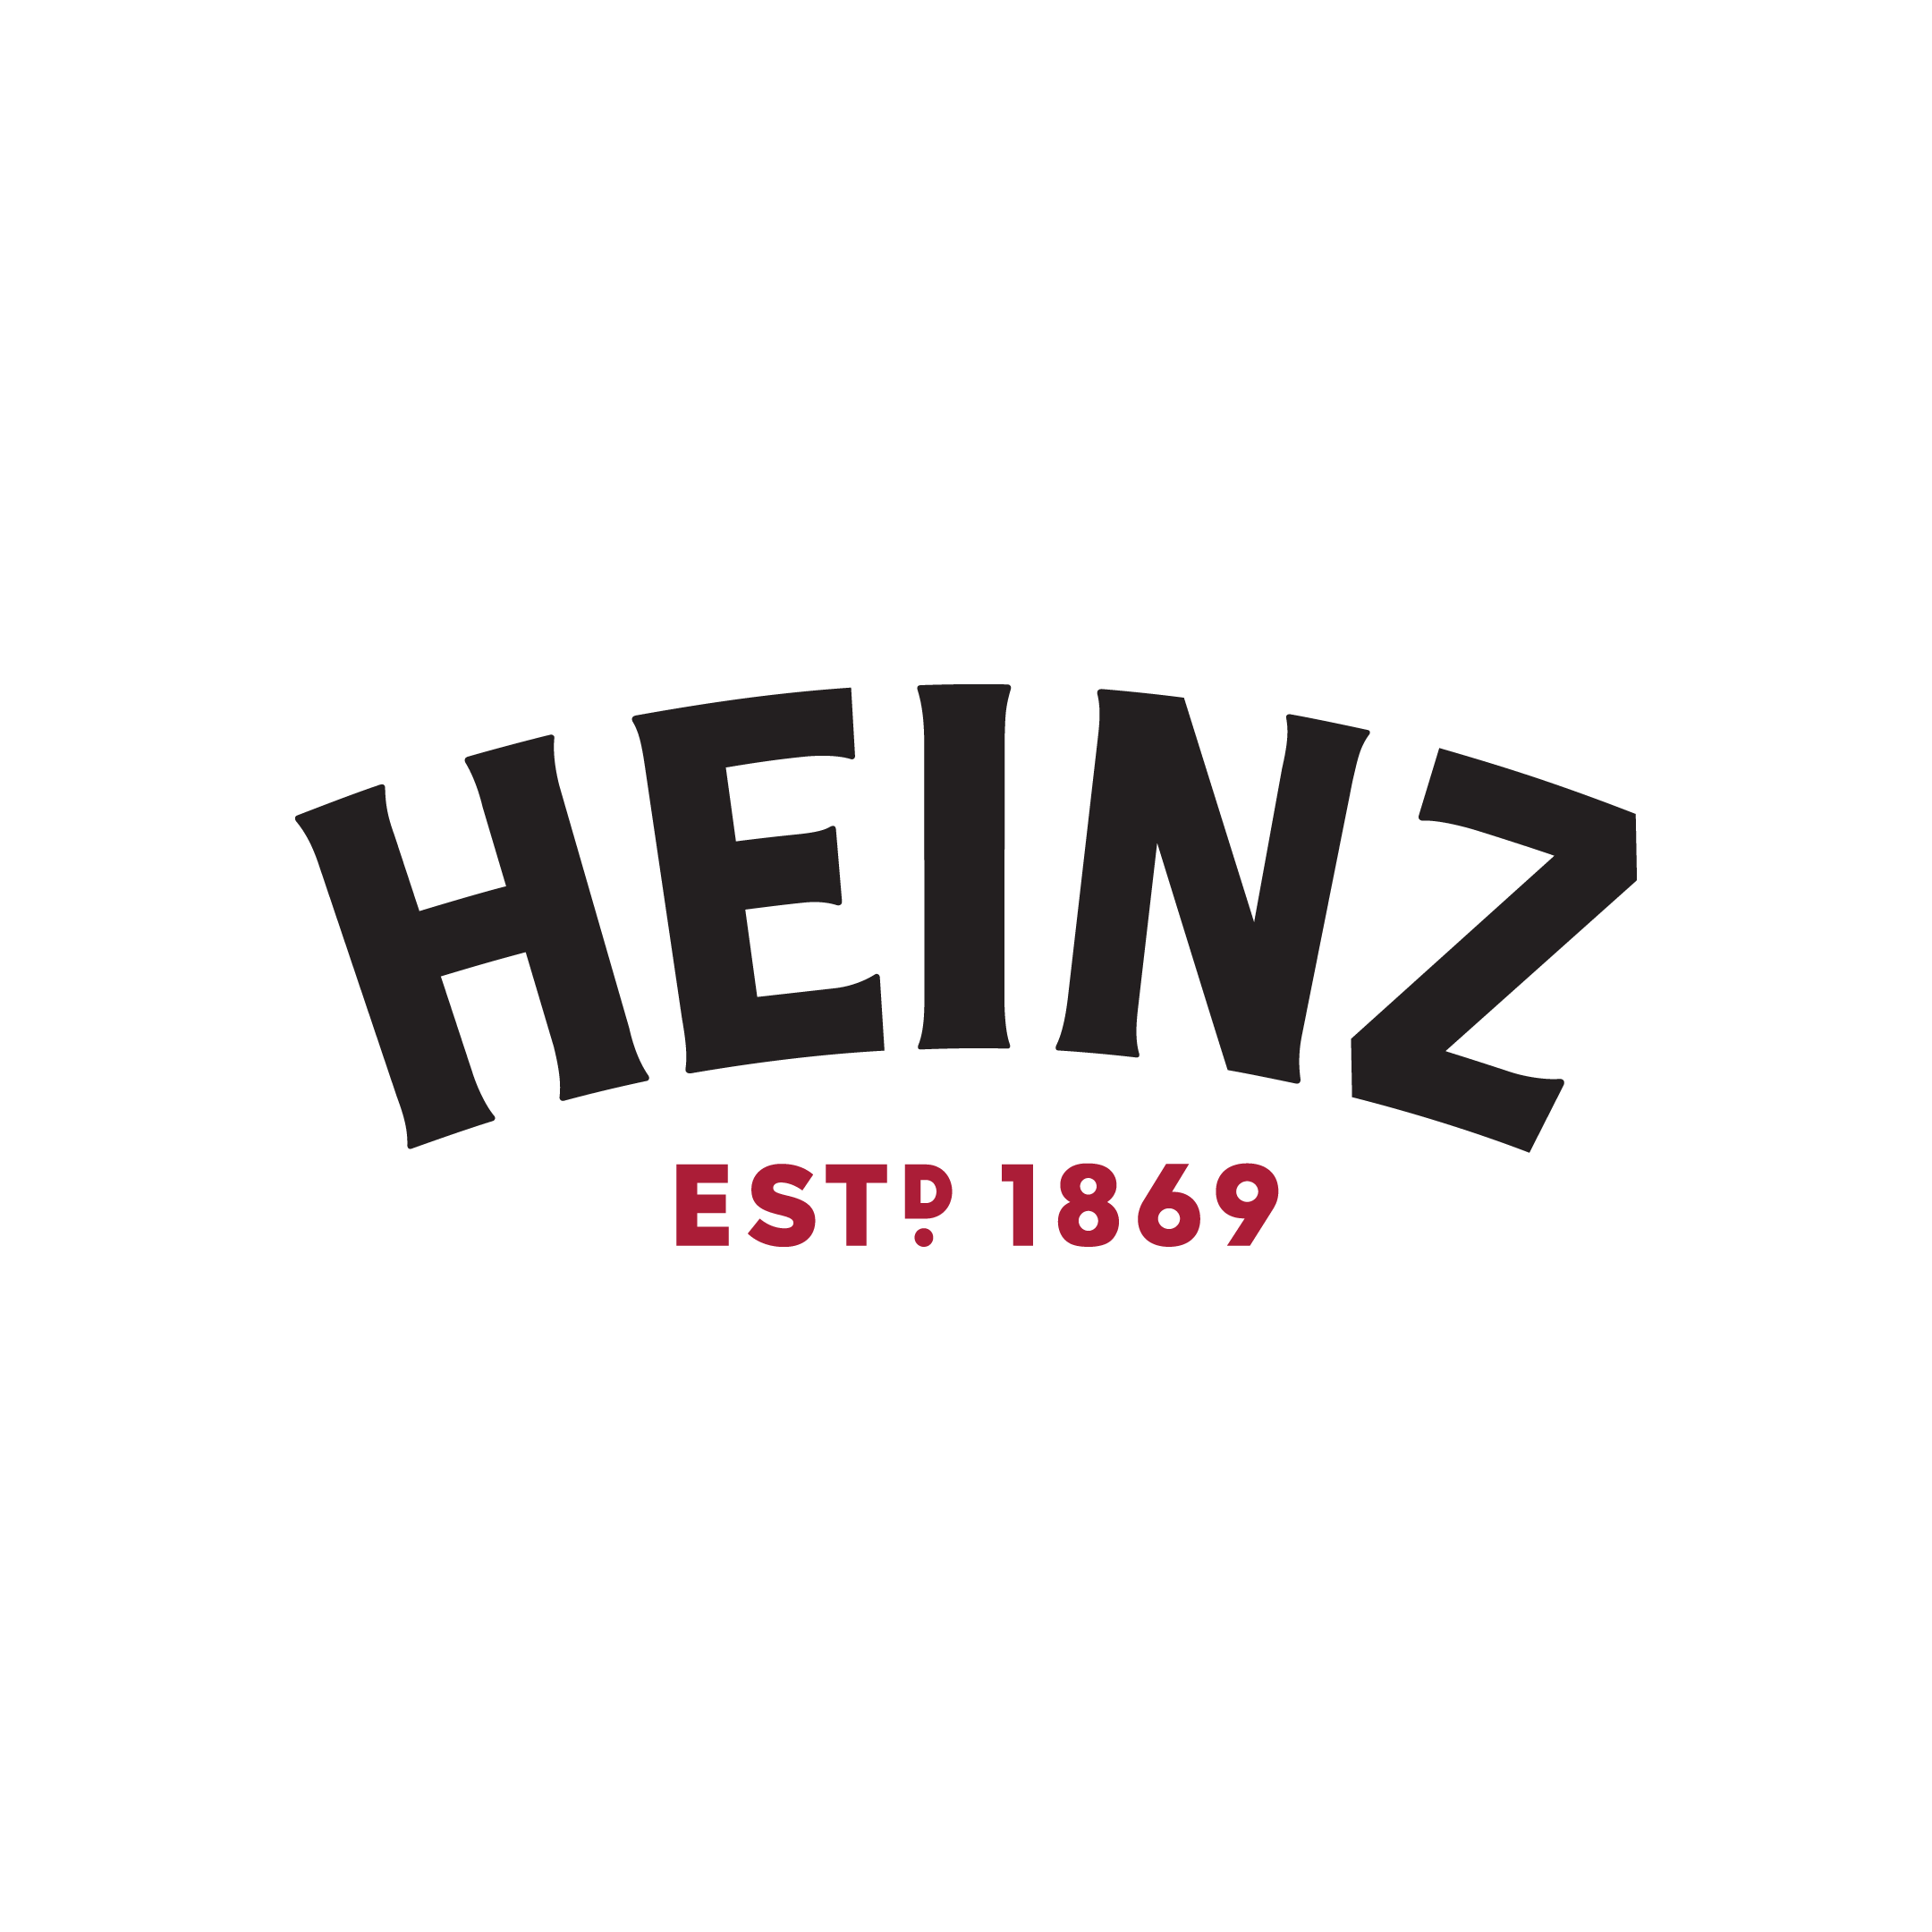 Heinz_EST1869.png